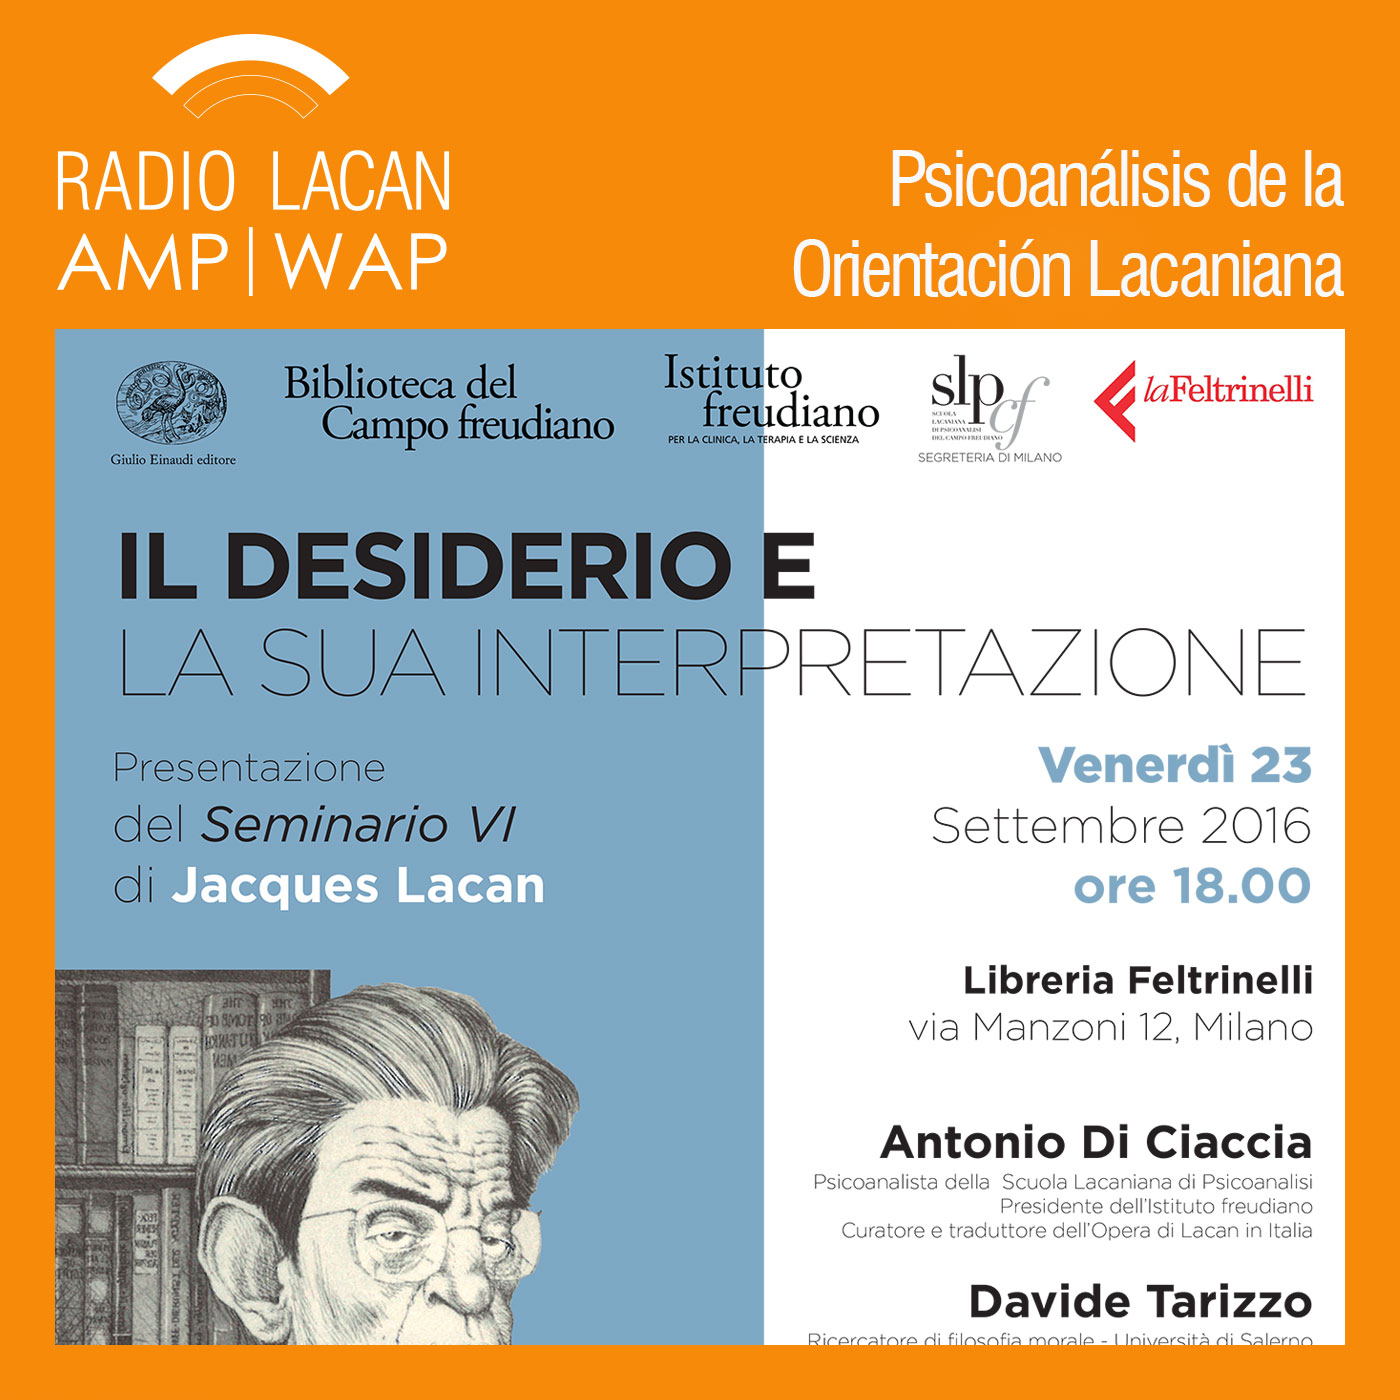 RadioLacan.com | Presentación del Seminario 6 de Jacques Lacan en Milán